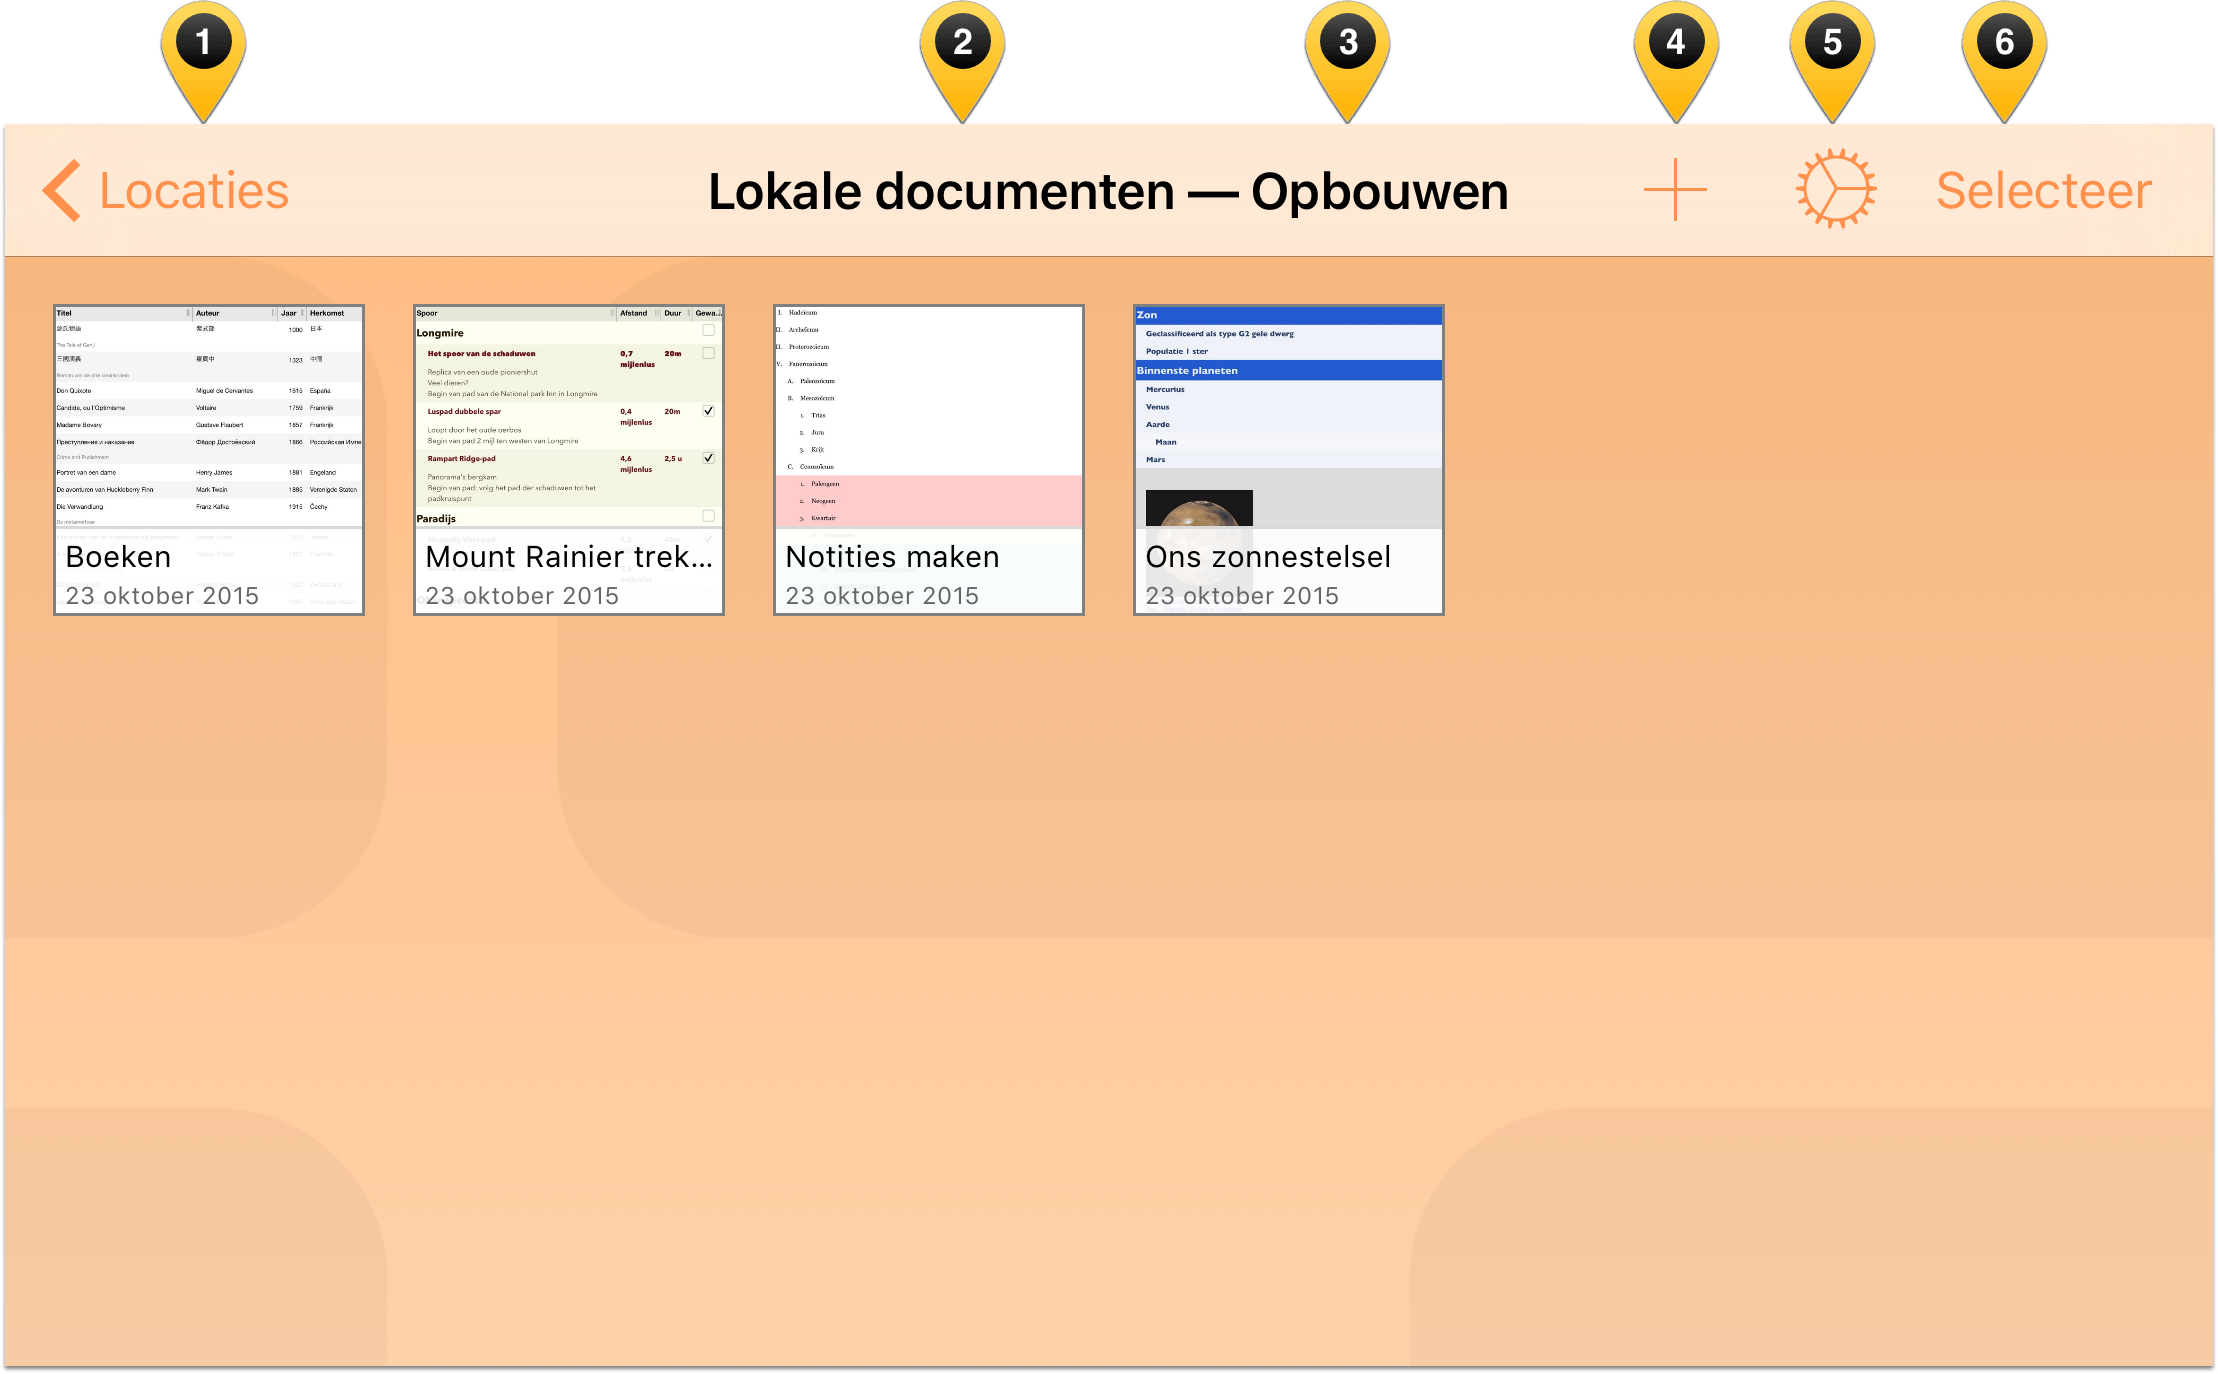 De verschillende elementen in de navigatiebalk van de Documentbrowser markeren